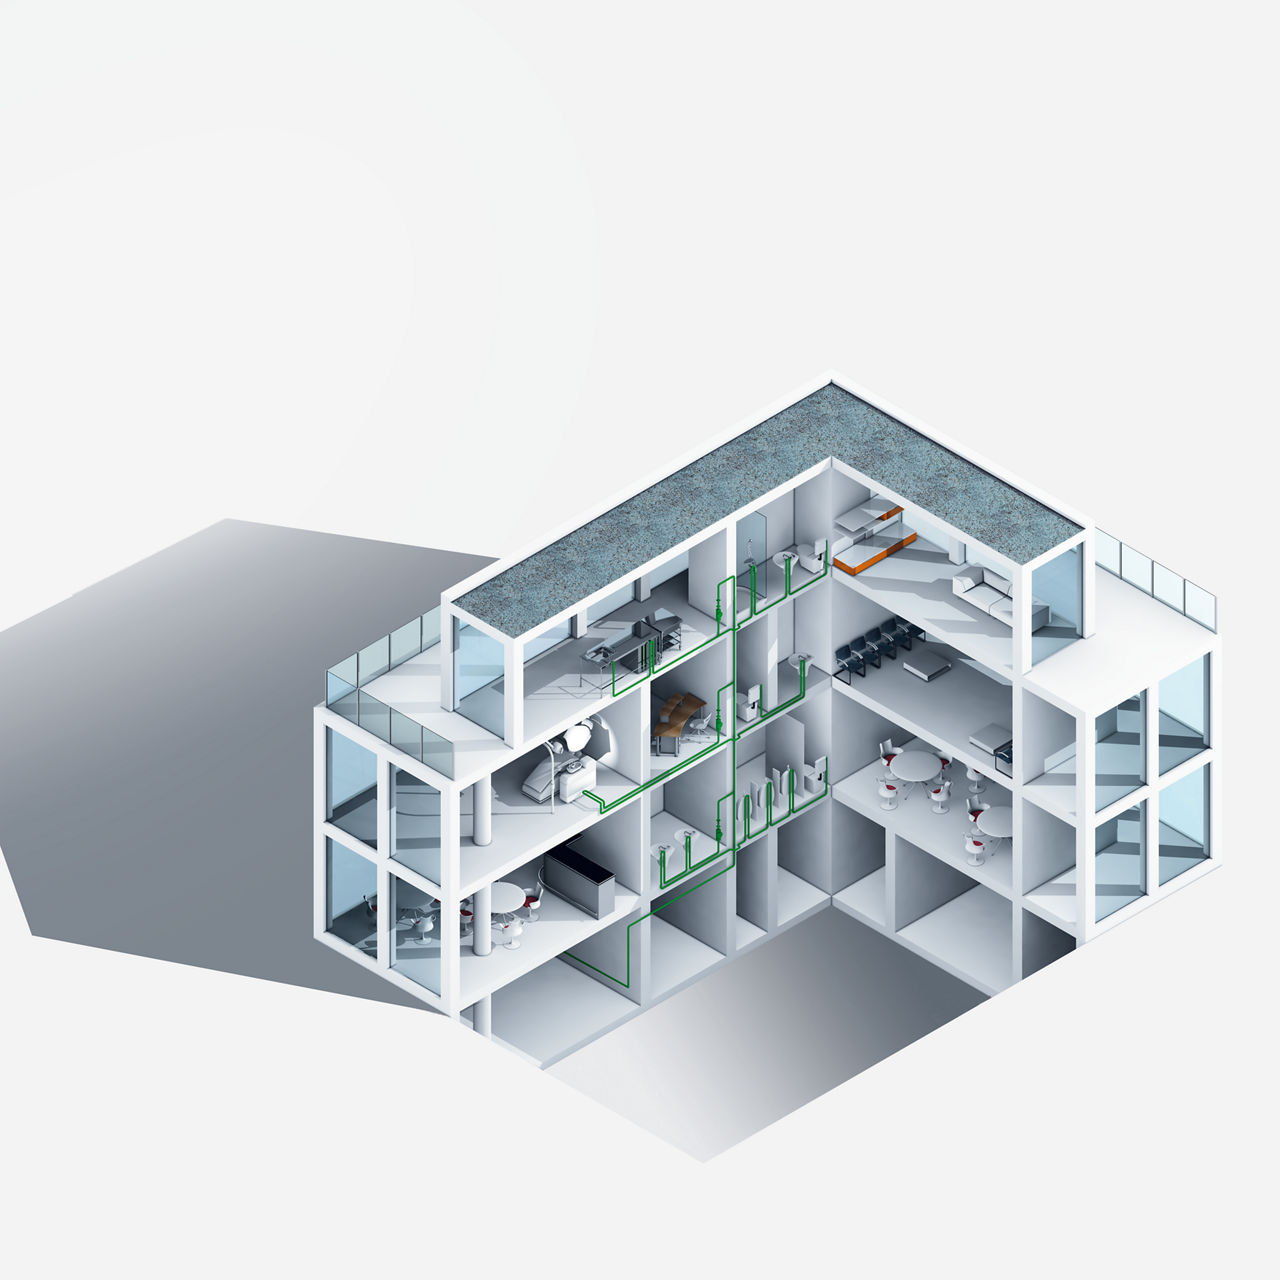 Koudwaterinstallaties in een gebouw met stagnatie per verdieping, bijvoorbeeld in kantoorgebouwen